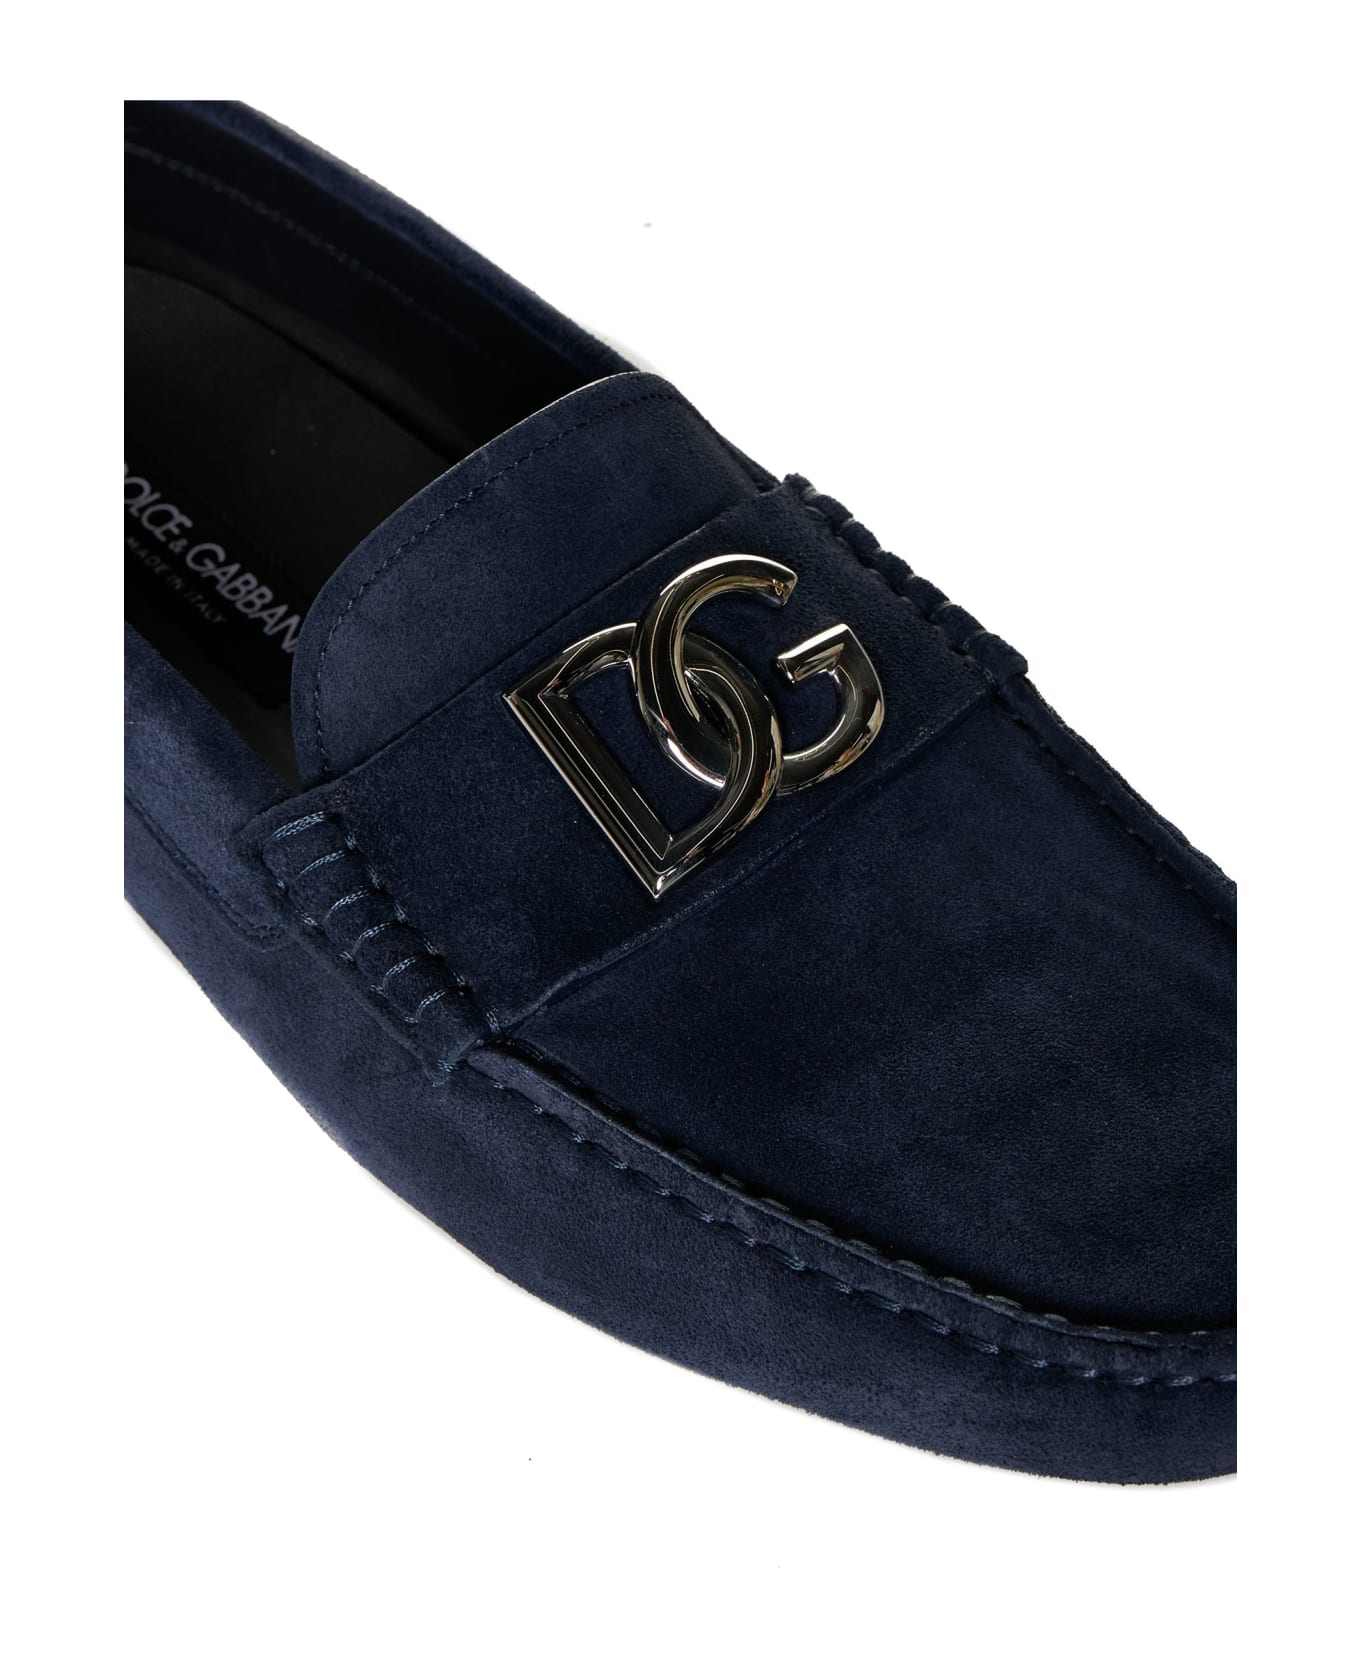 Dolce & Gabbana Driver Moccasin - Tono blu